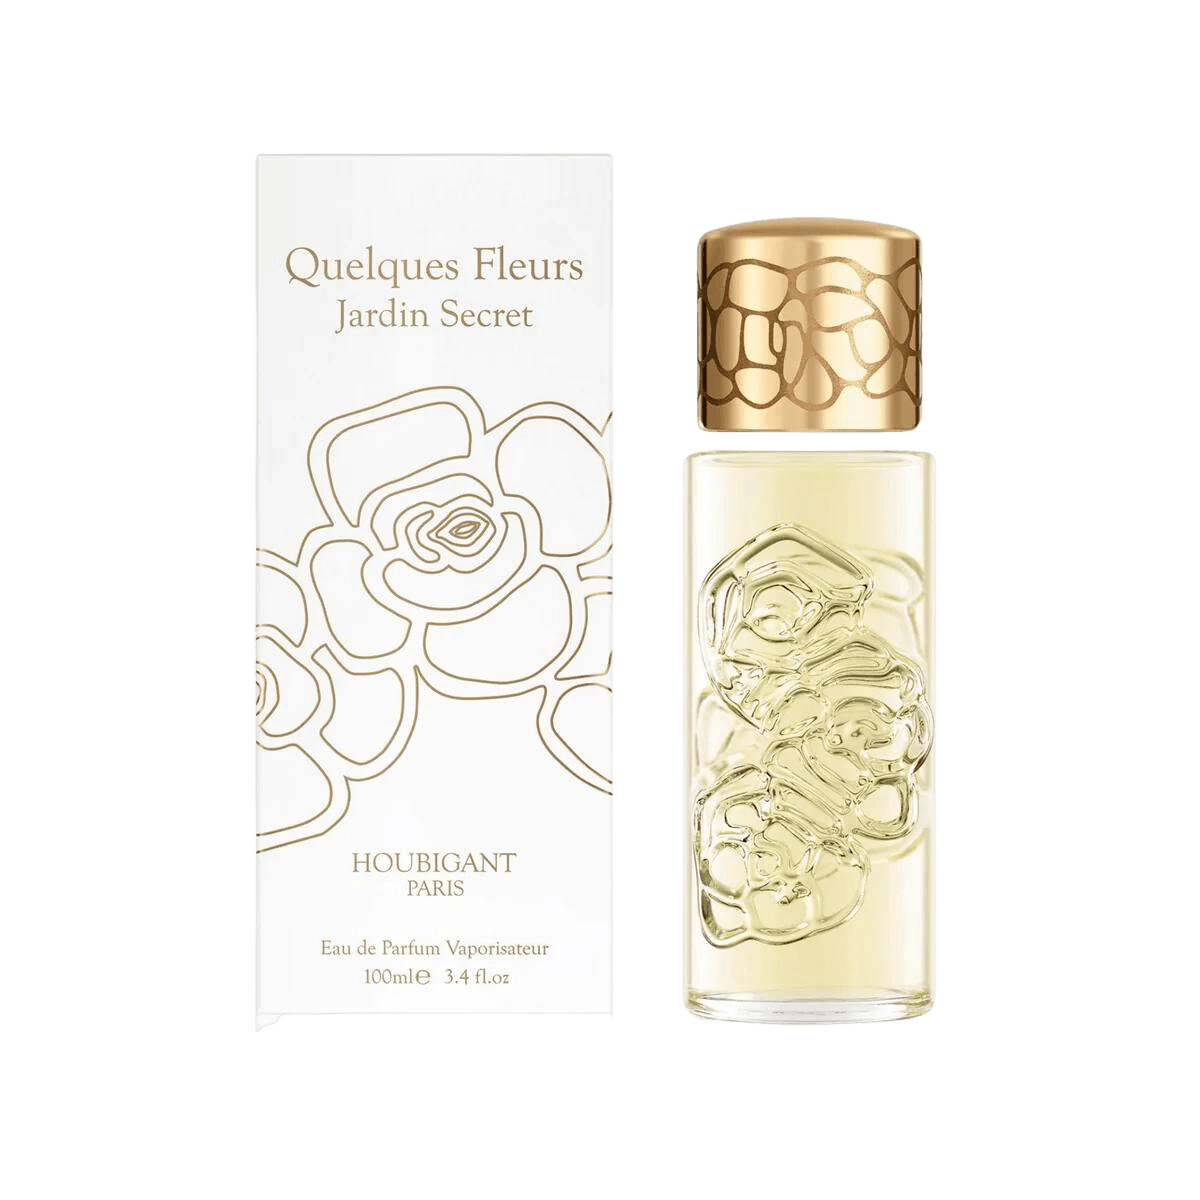 Houbigant - Quelques Fleurs Jardin Secret box | Perfume Lounge